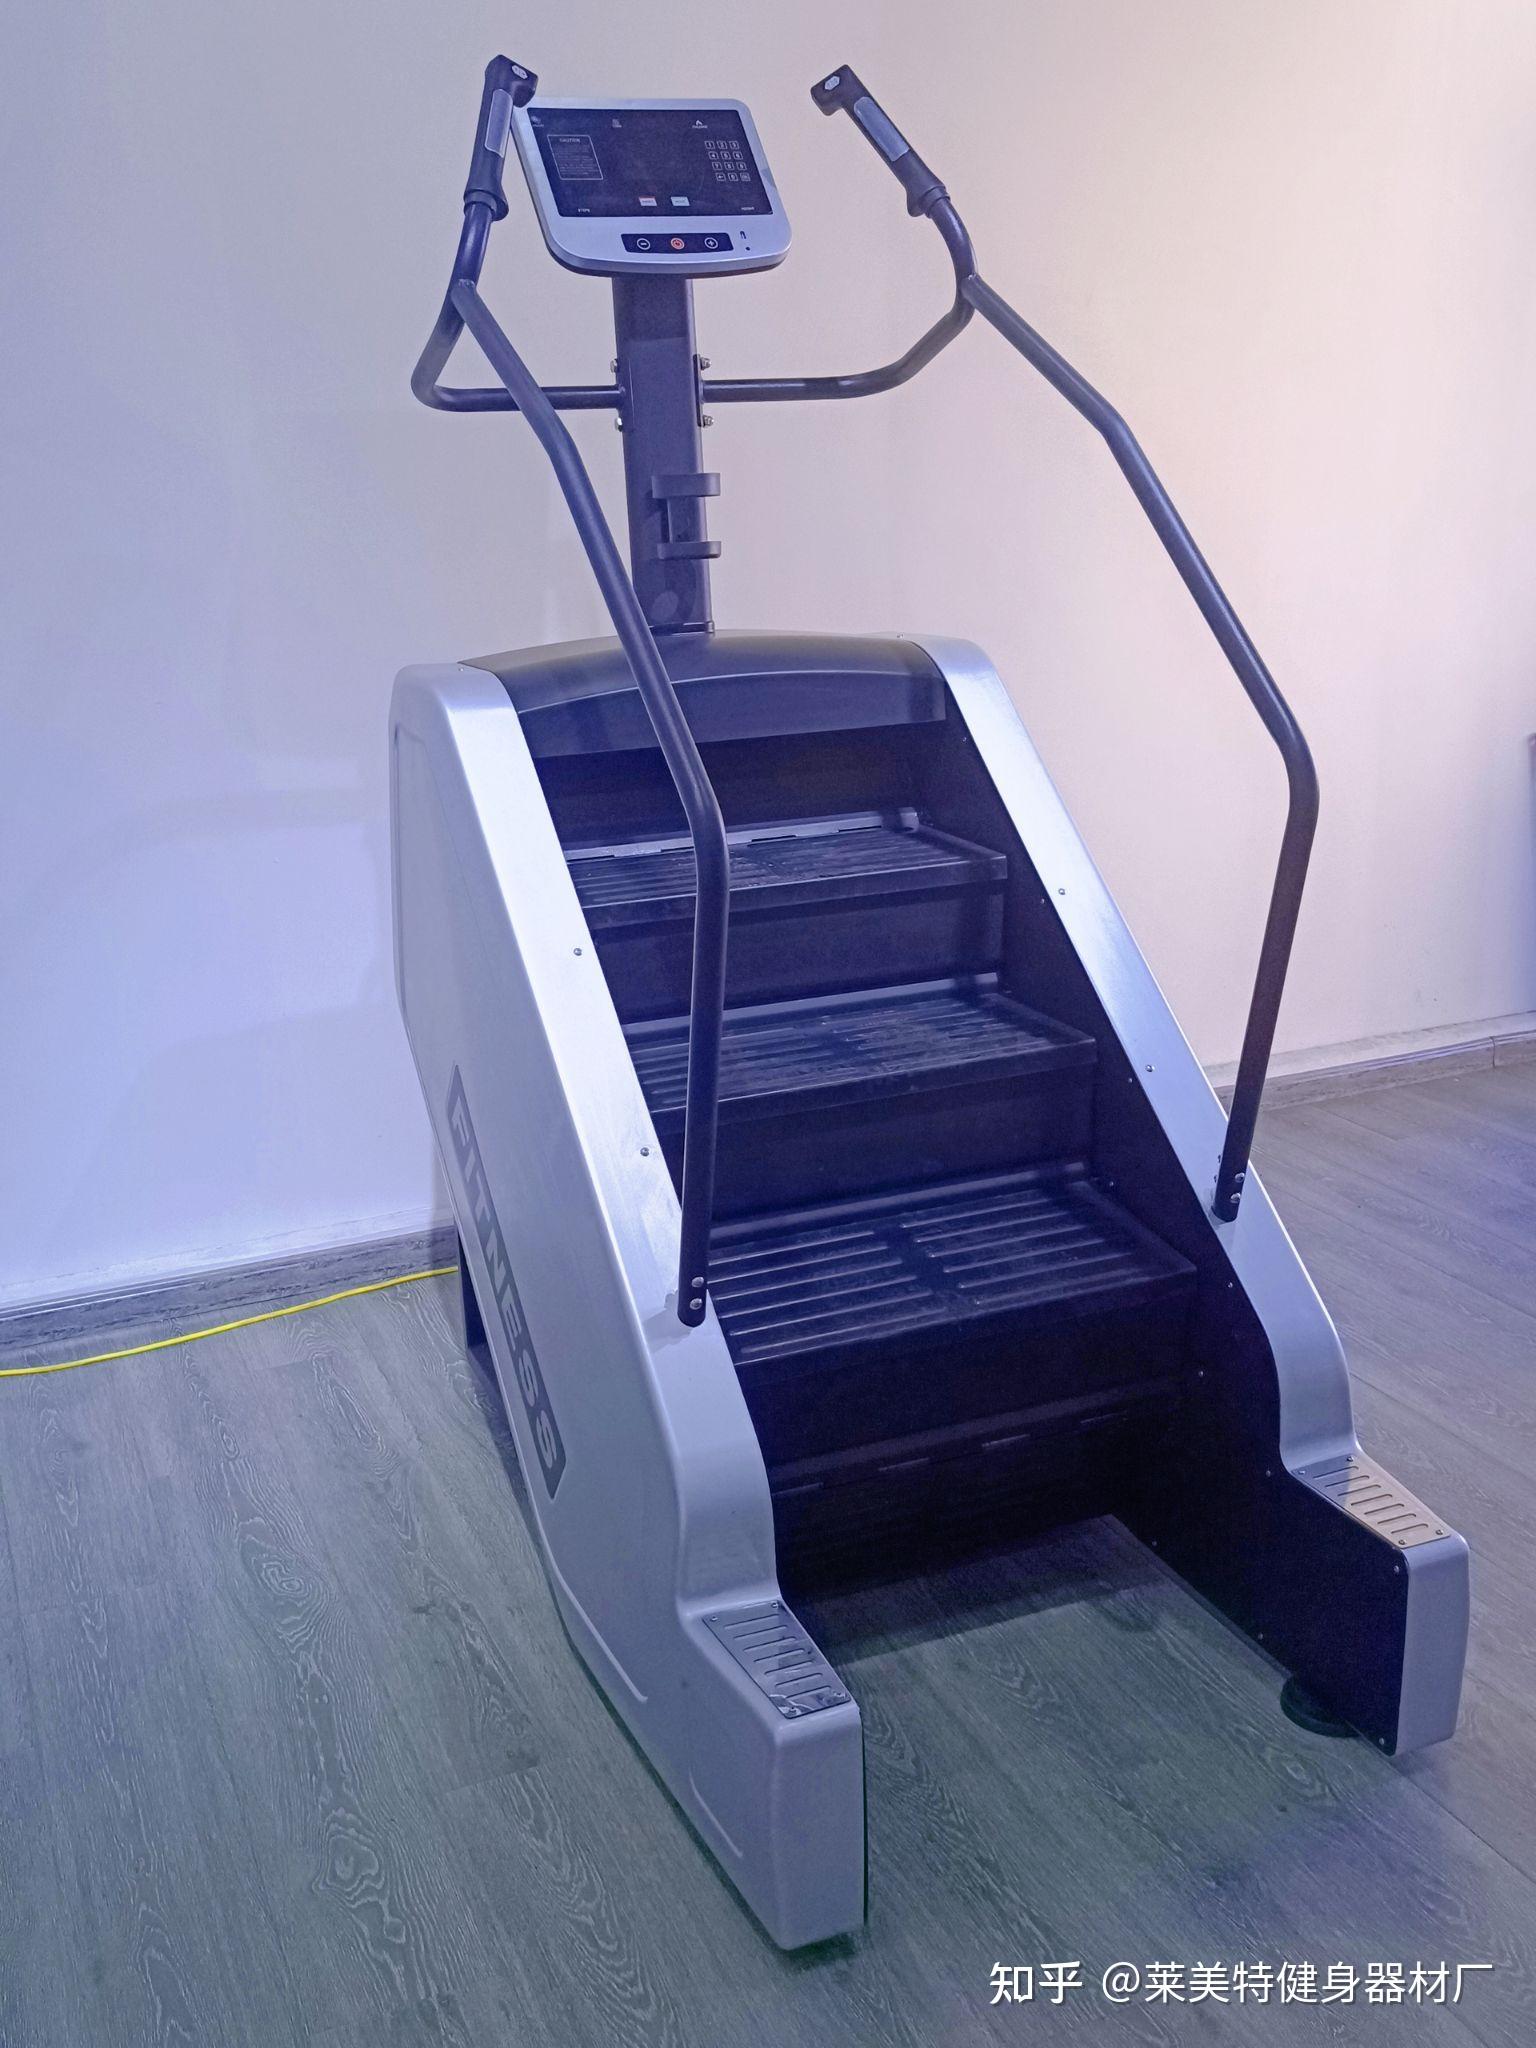 高端楼梯机健身房商用爬楼机莱美特健身器材